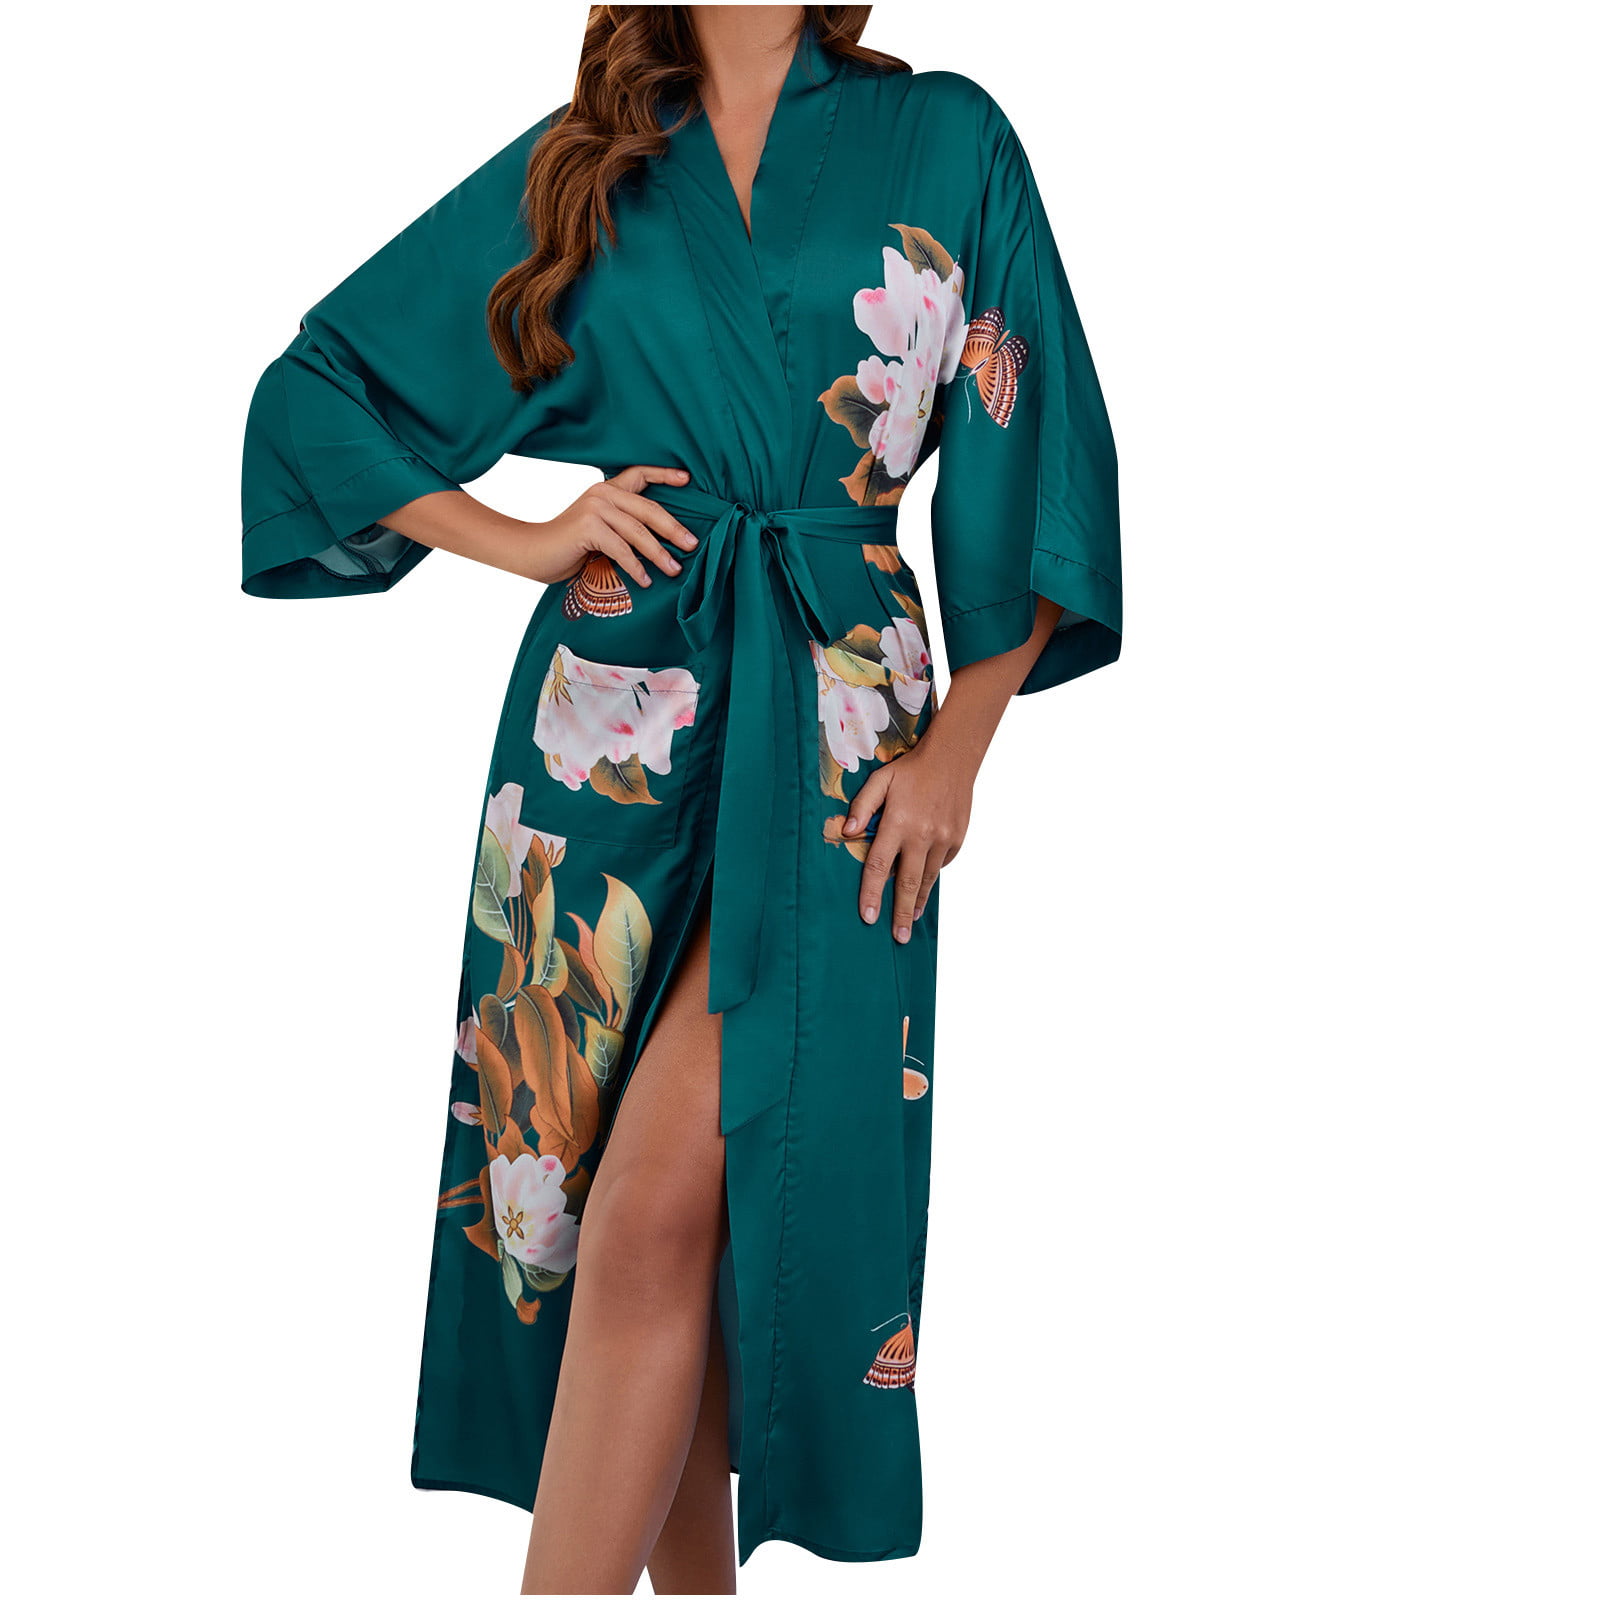 Silk Kimono Robe Satin Robe Dressing gown Summer Kimono Dress Boho Summer Robe Maternity Gown Robe For Women Silk Bath Robes